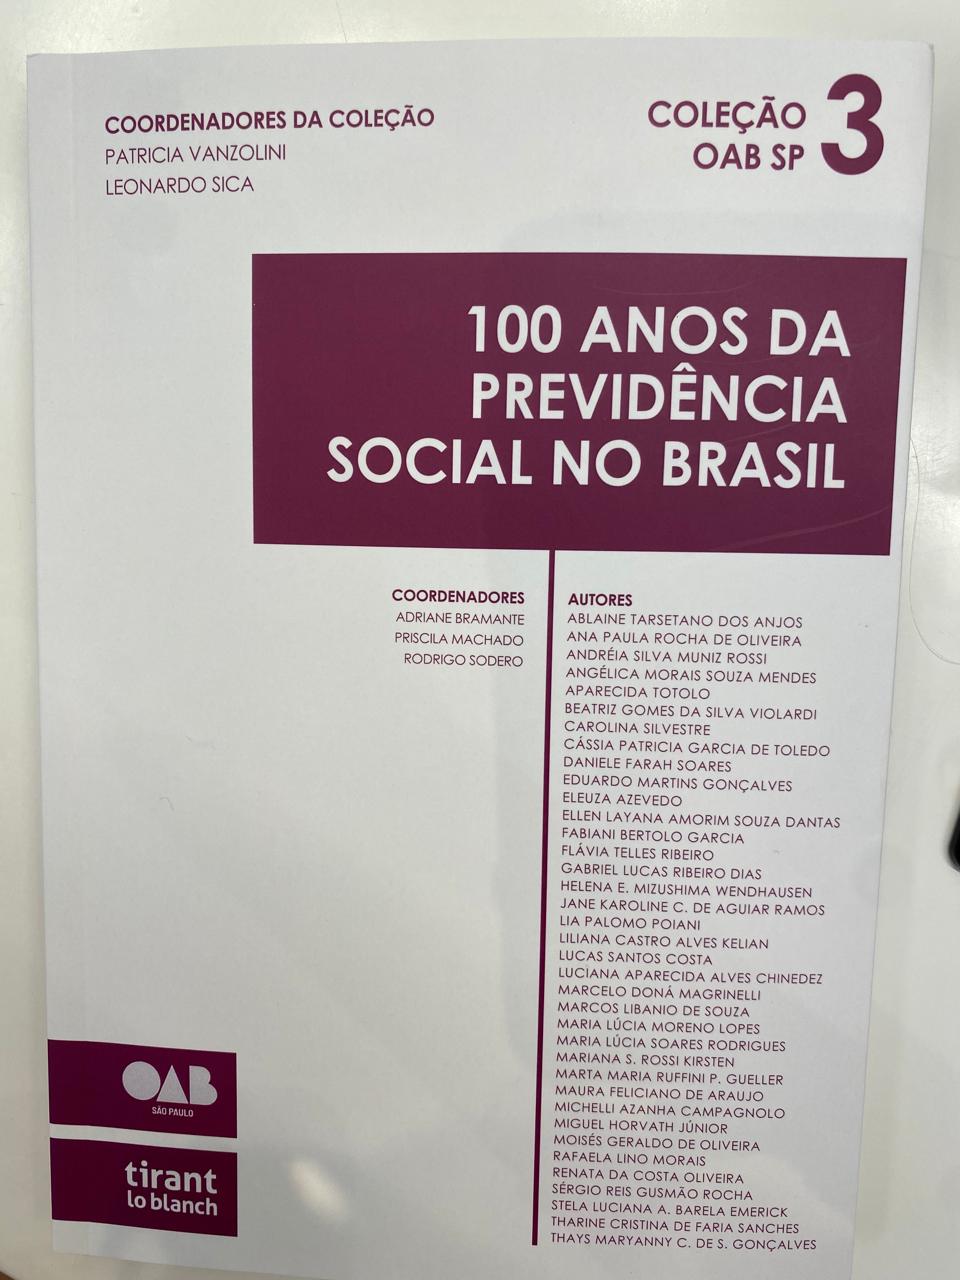 100 ANOS DA PREVIDÊNCIA SOCIAL NO BRASIL